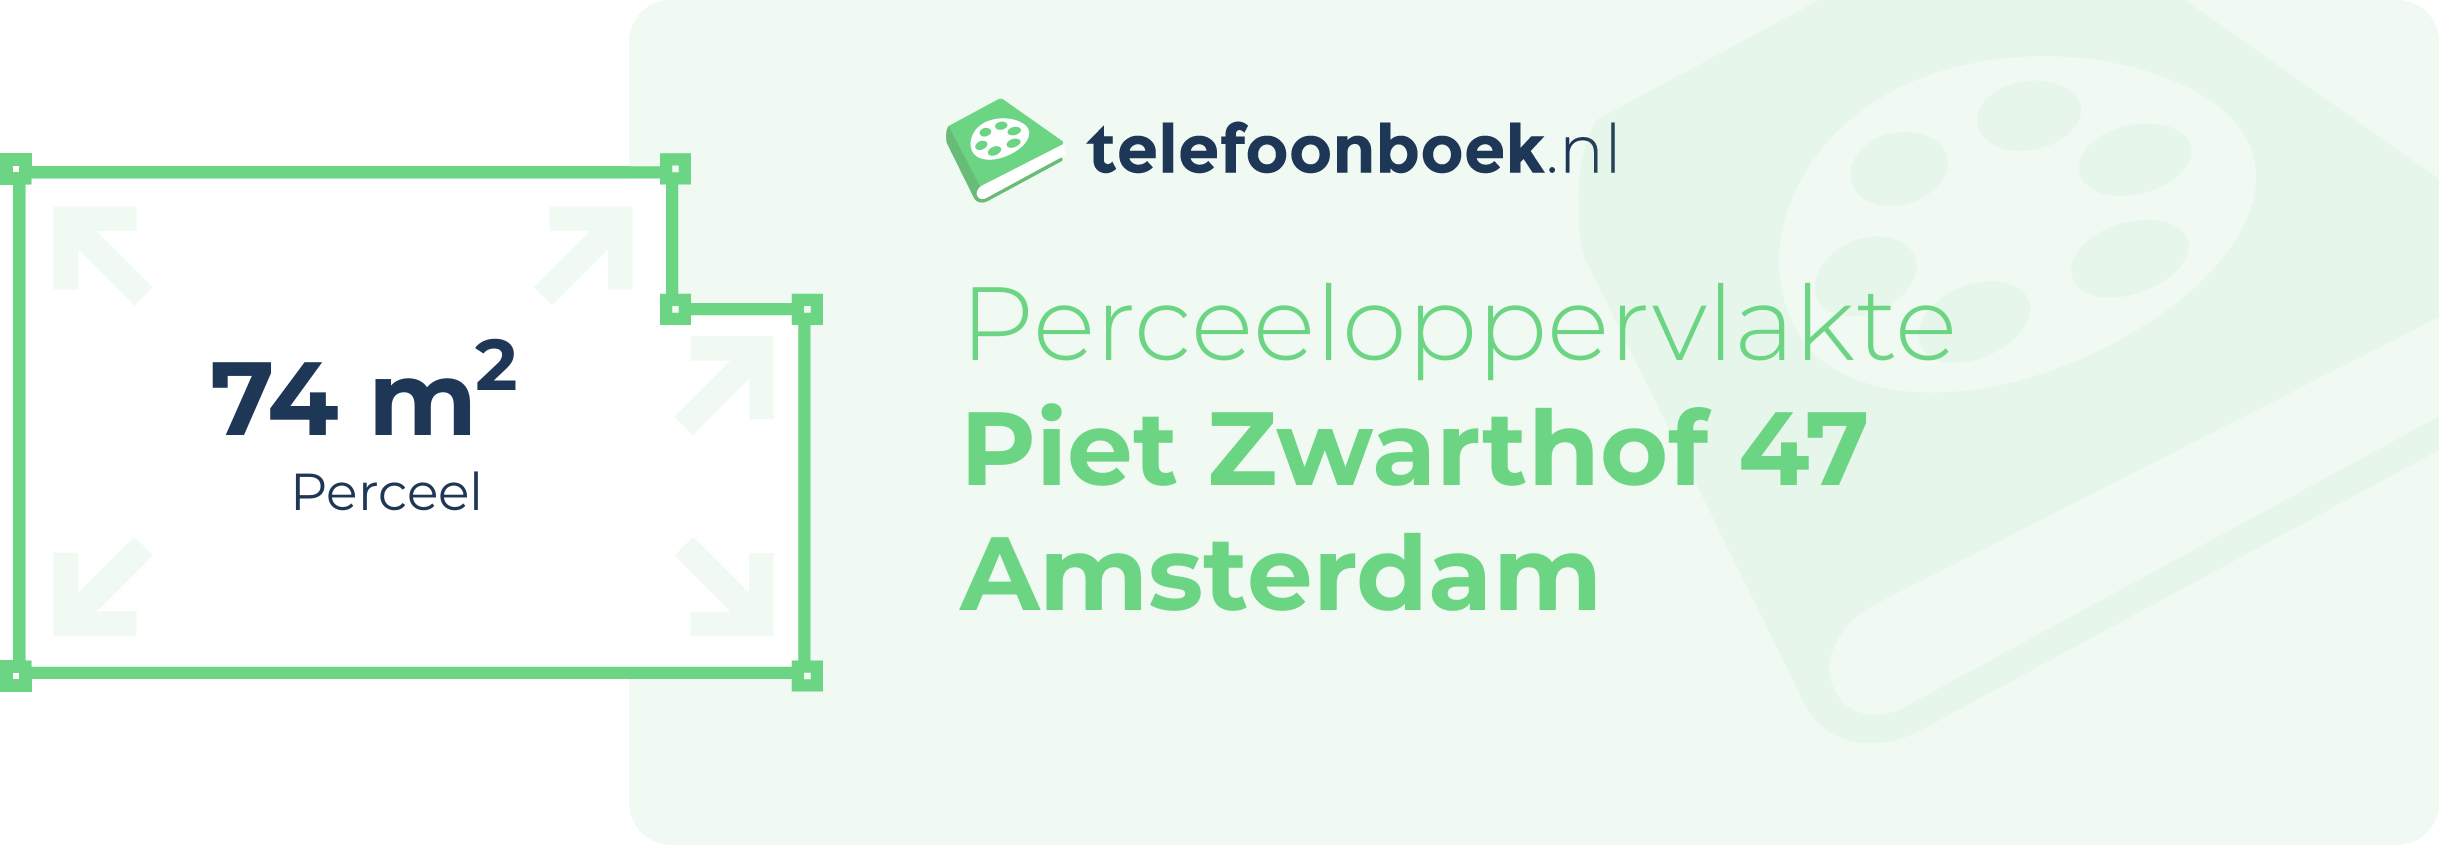 Perceeloppervlakte Piet Zwarthof 47 Amsterdam